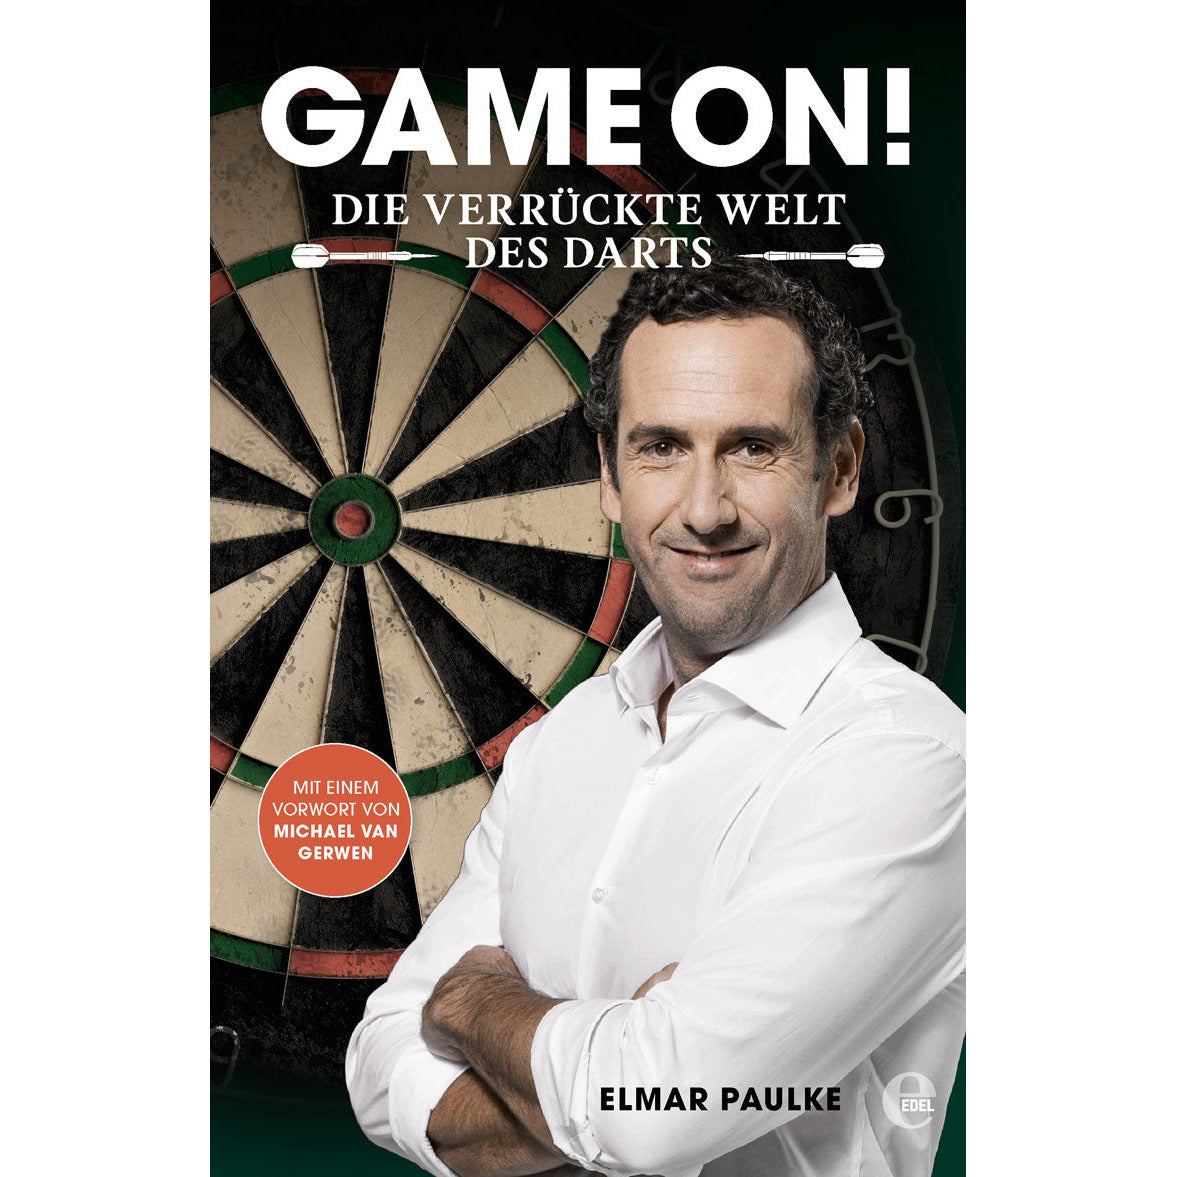 Elmar Paulke's "Game On" Die verrückte Welt des Darts